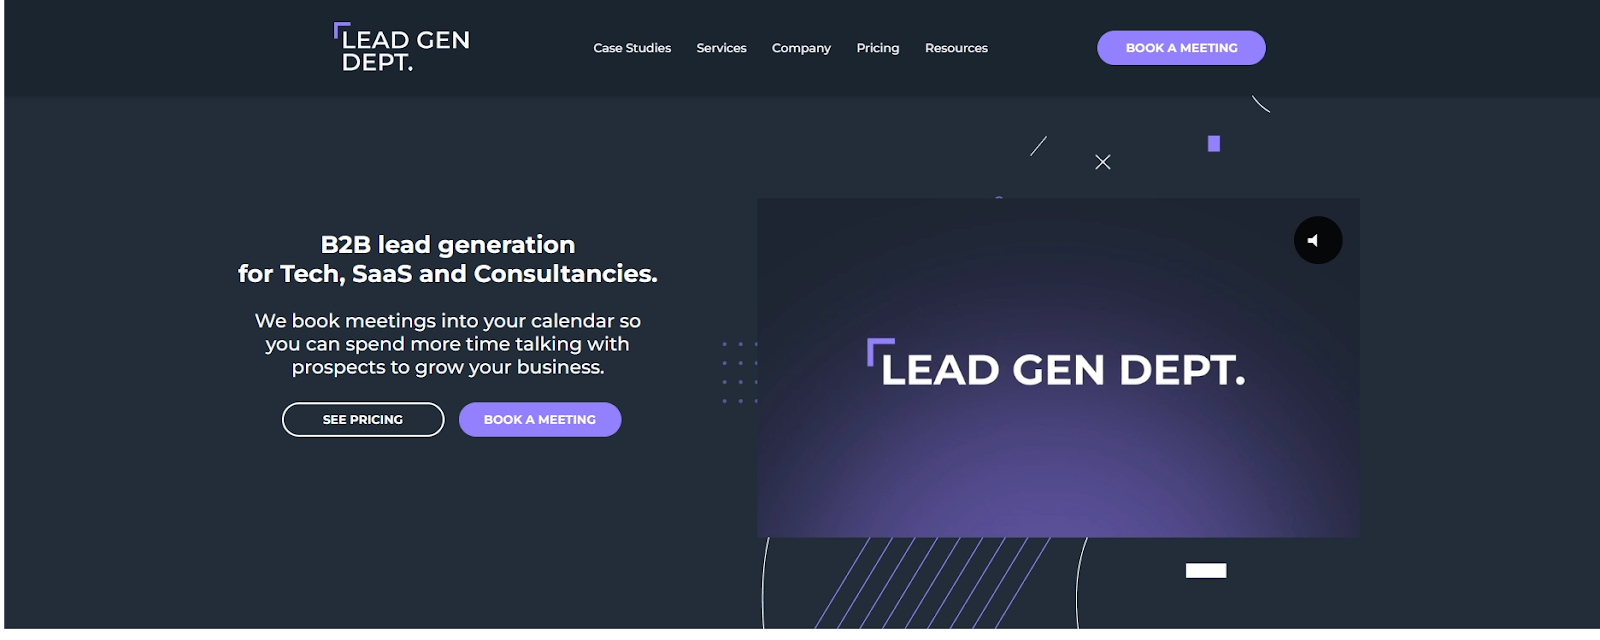 Lead Gen Dept. is a UK based lead generation company.